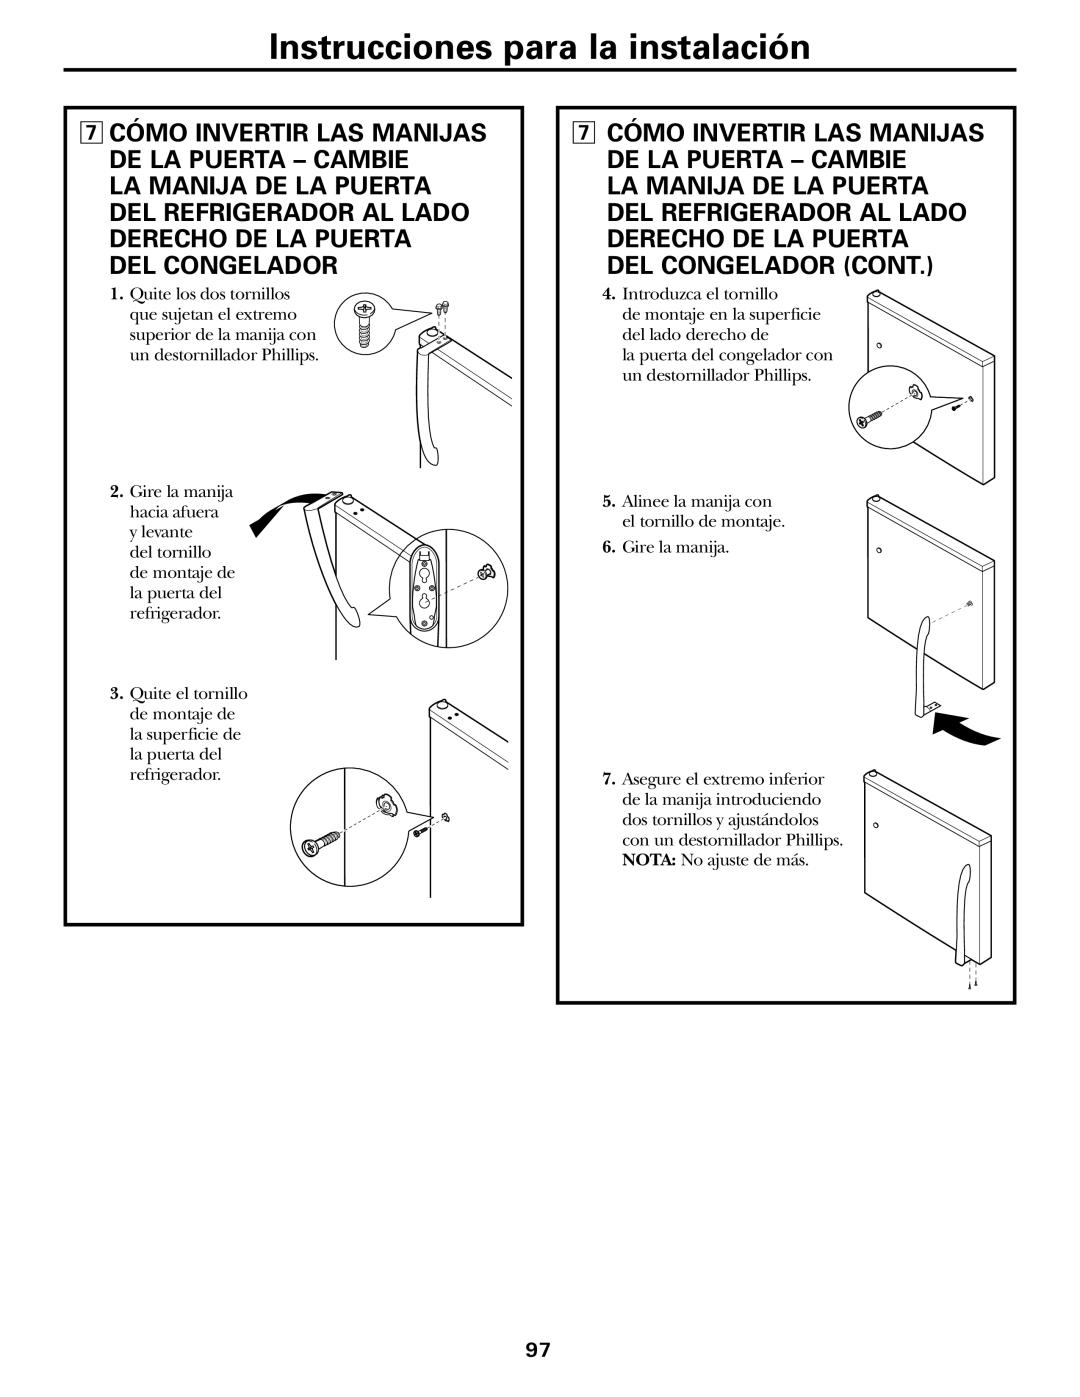 GE GTH21 Cómo Invertir Las Manijas De La Puerta - Cambie, Instrucciones para la instalación, Quite los dos tornillos 